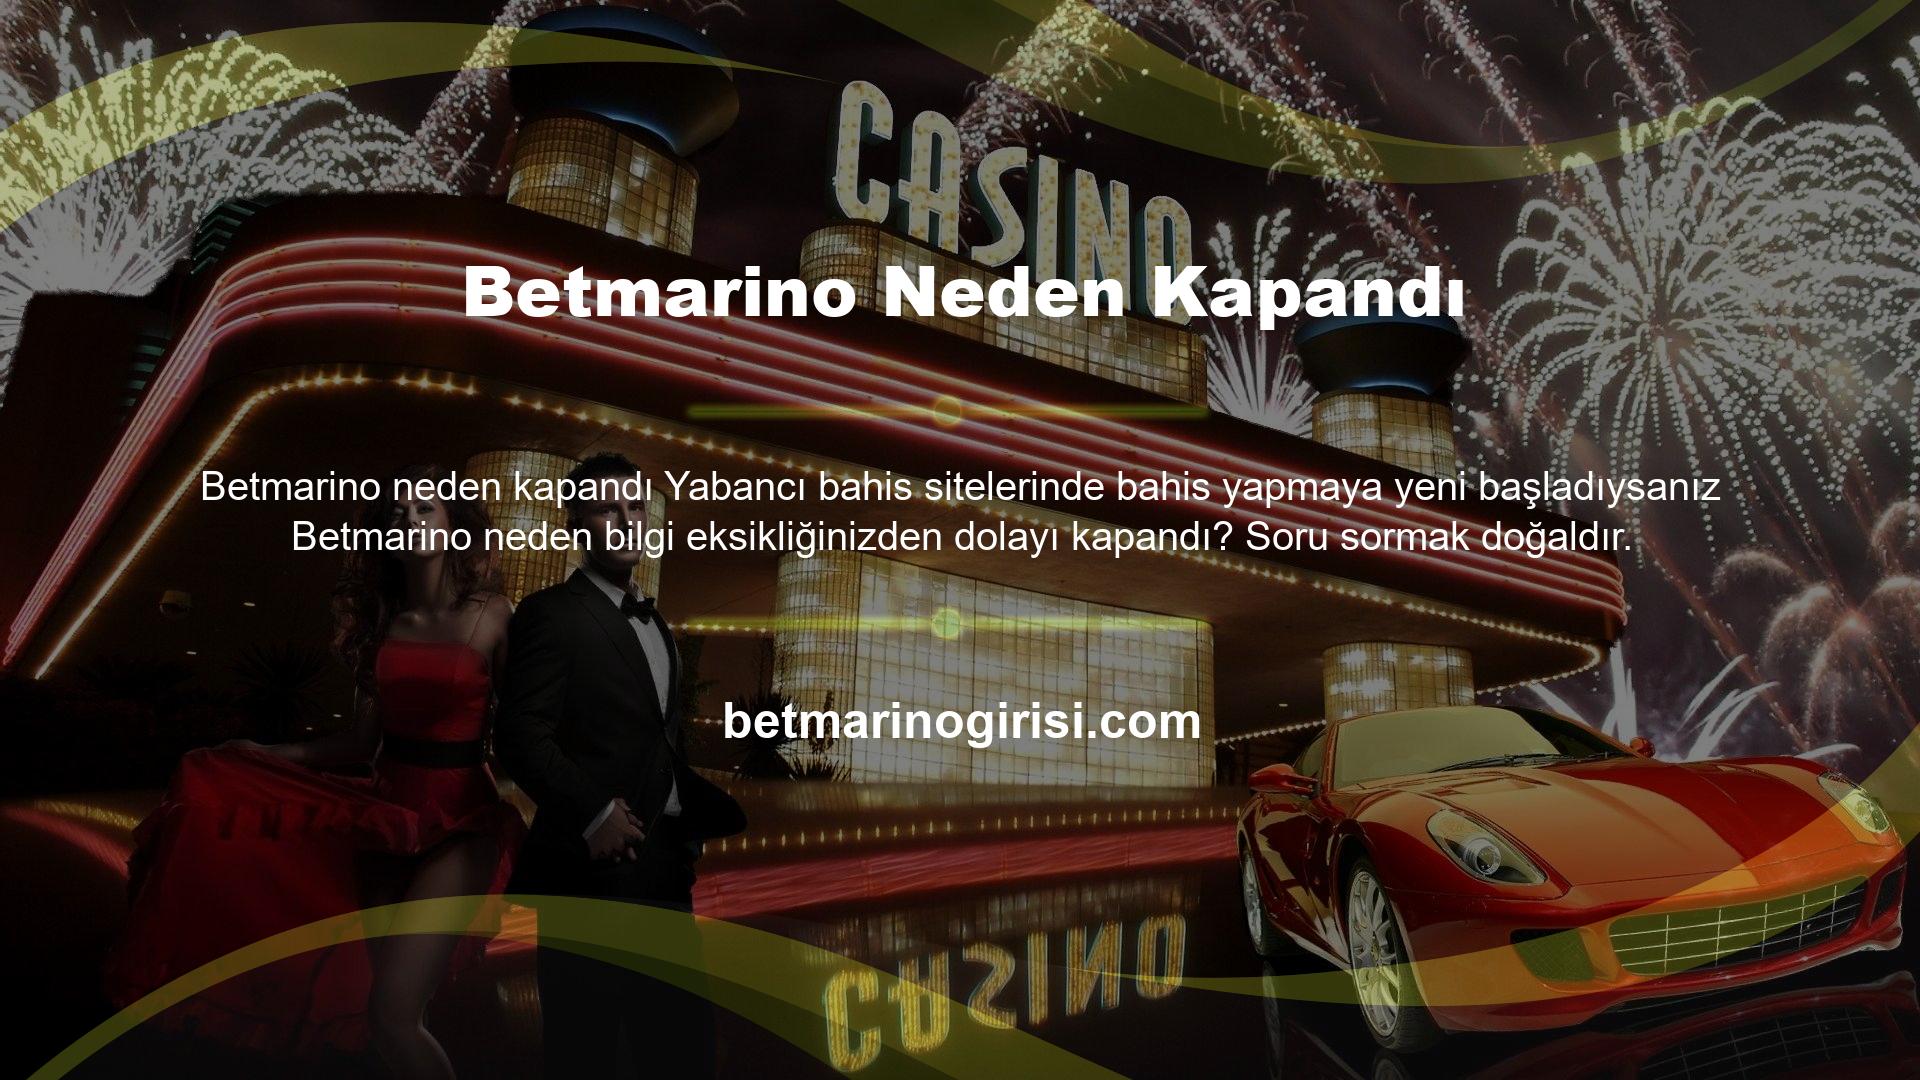 Betmarino web sitesi ülkemizde yasa dışı yani devlet onayı olmadan kumar oynanması nedeniyle kanun gereği TİB tarafından kapatılmıştır